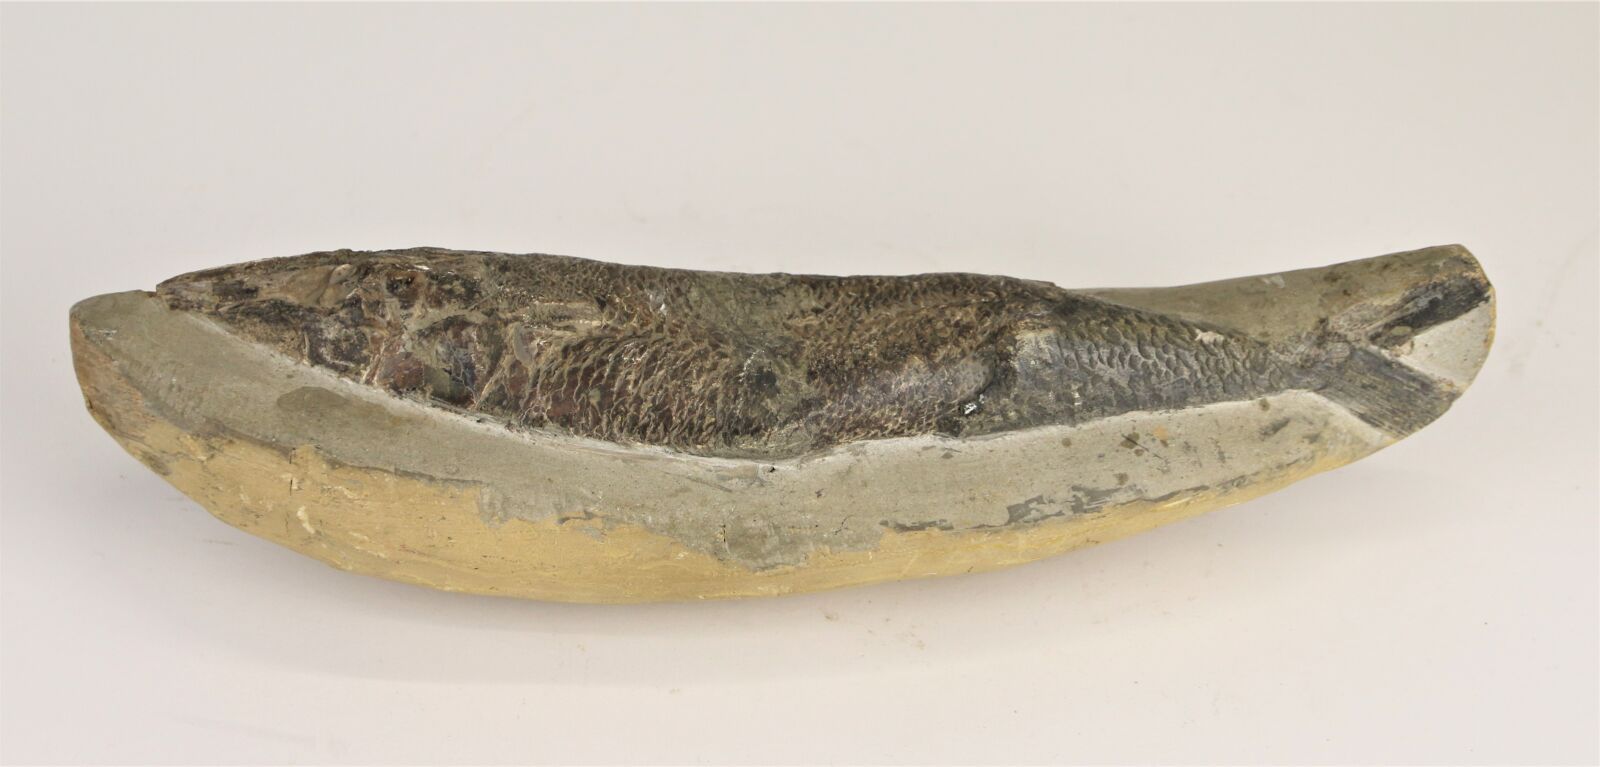 Null Fossile de poisson.
Longueur: 30 cm